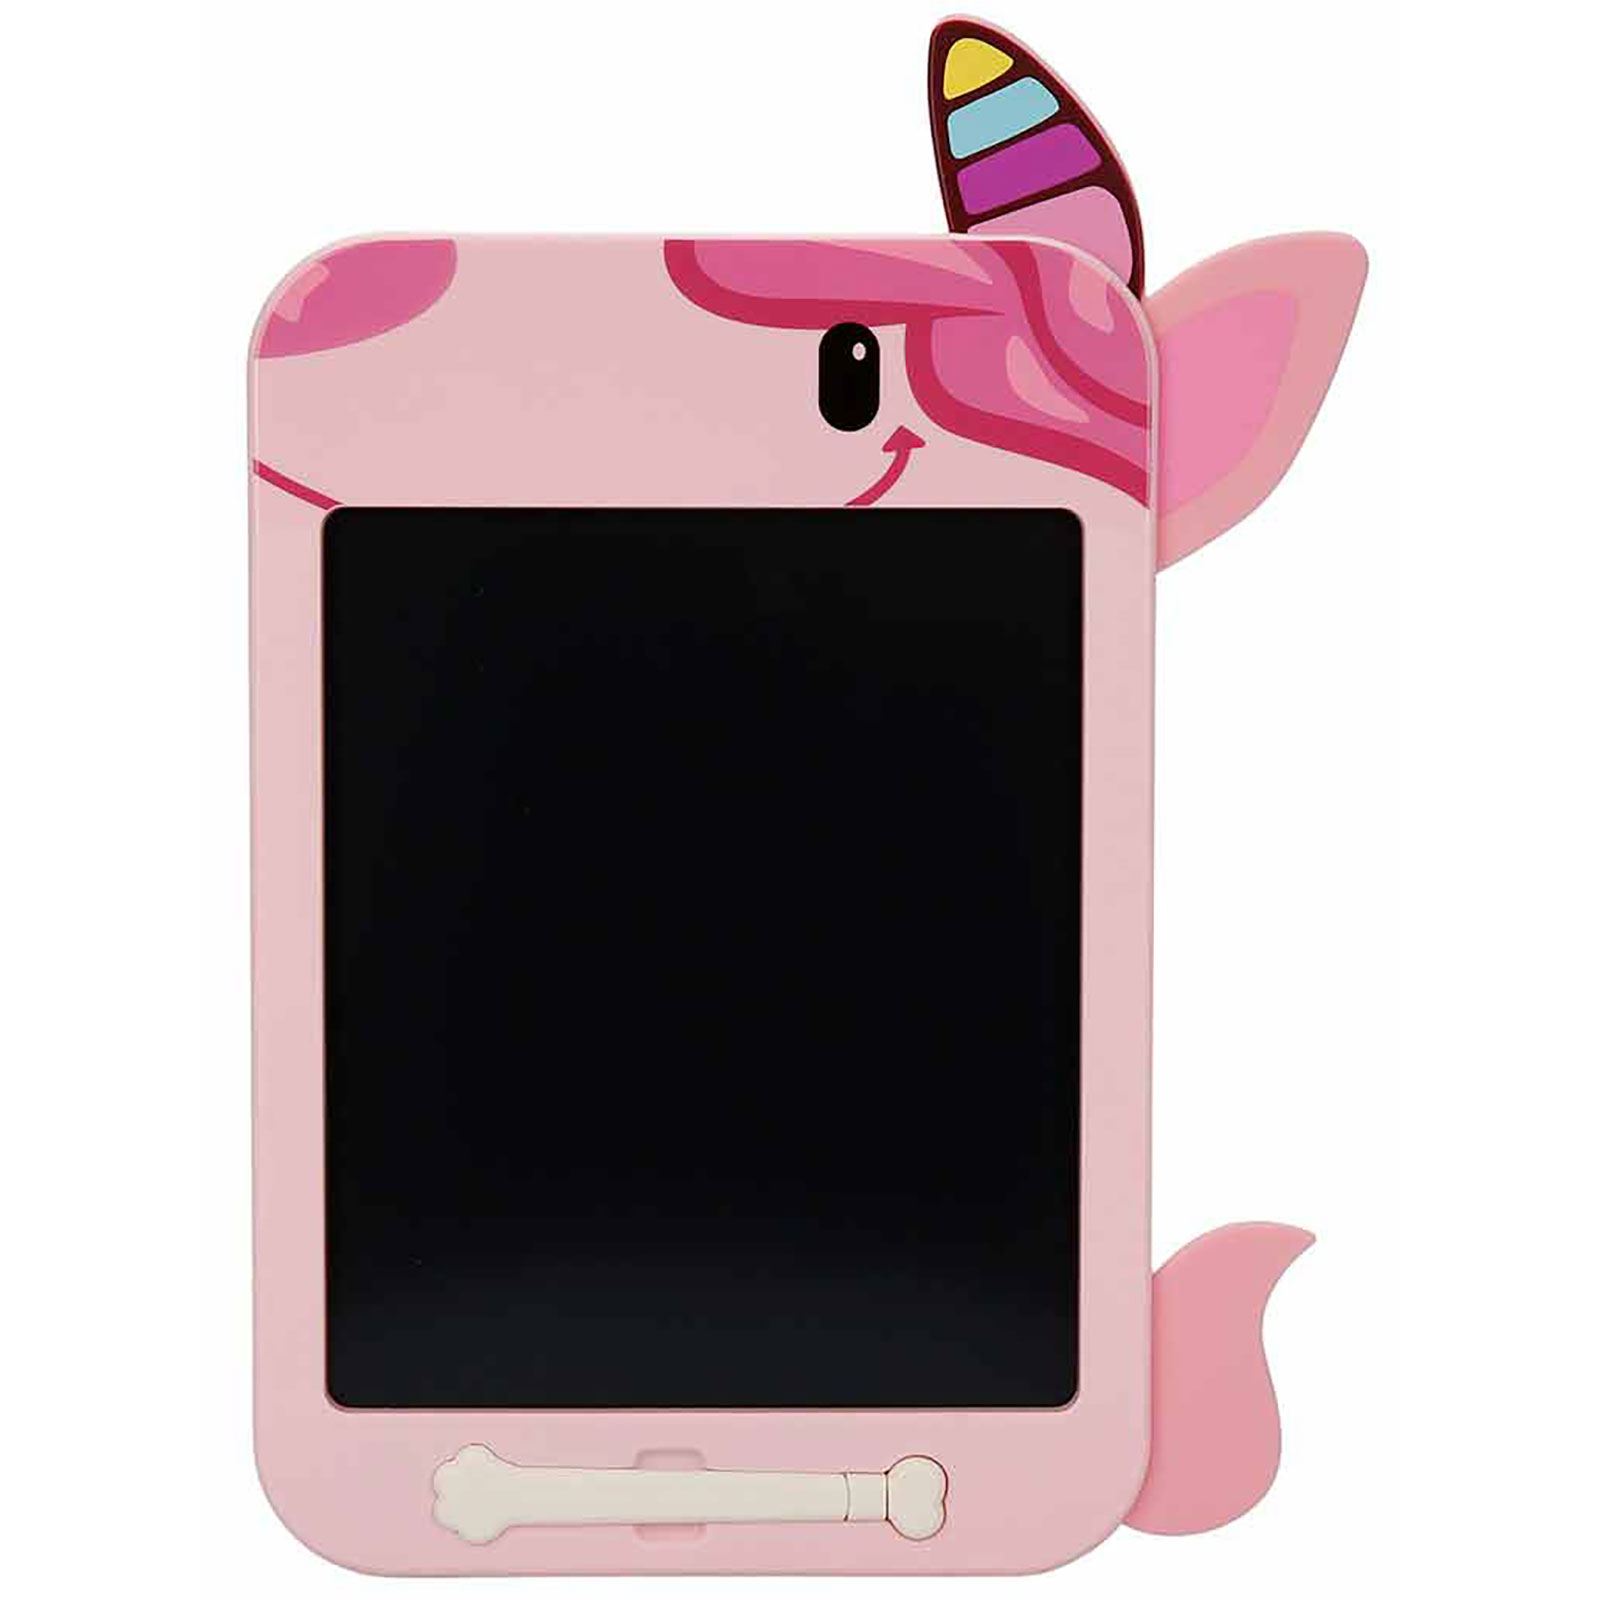 Sunman Unicorn Şekilli 10,5 LCD Dijital Çizim Tableti